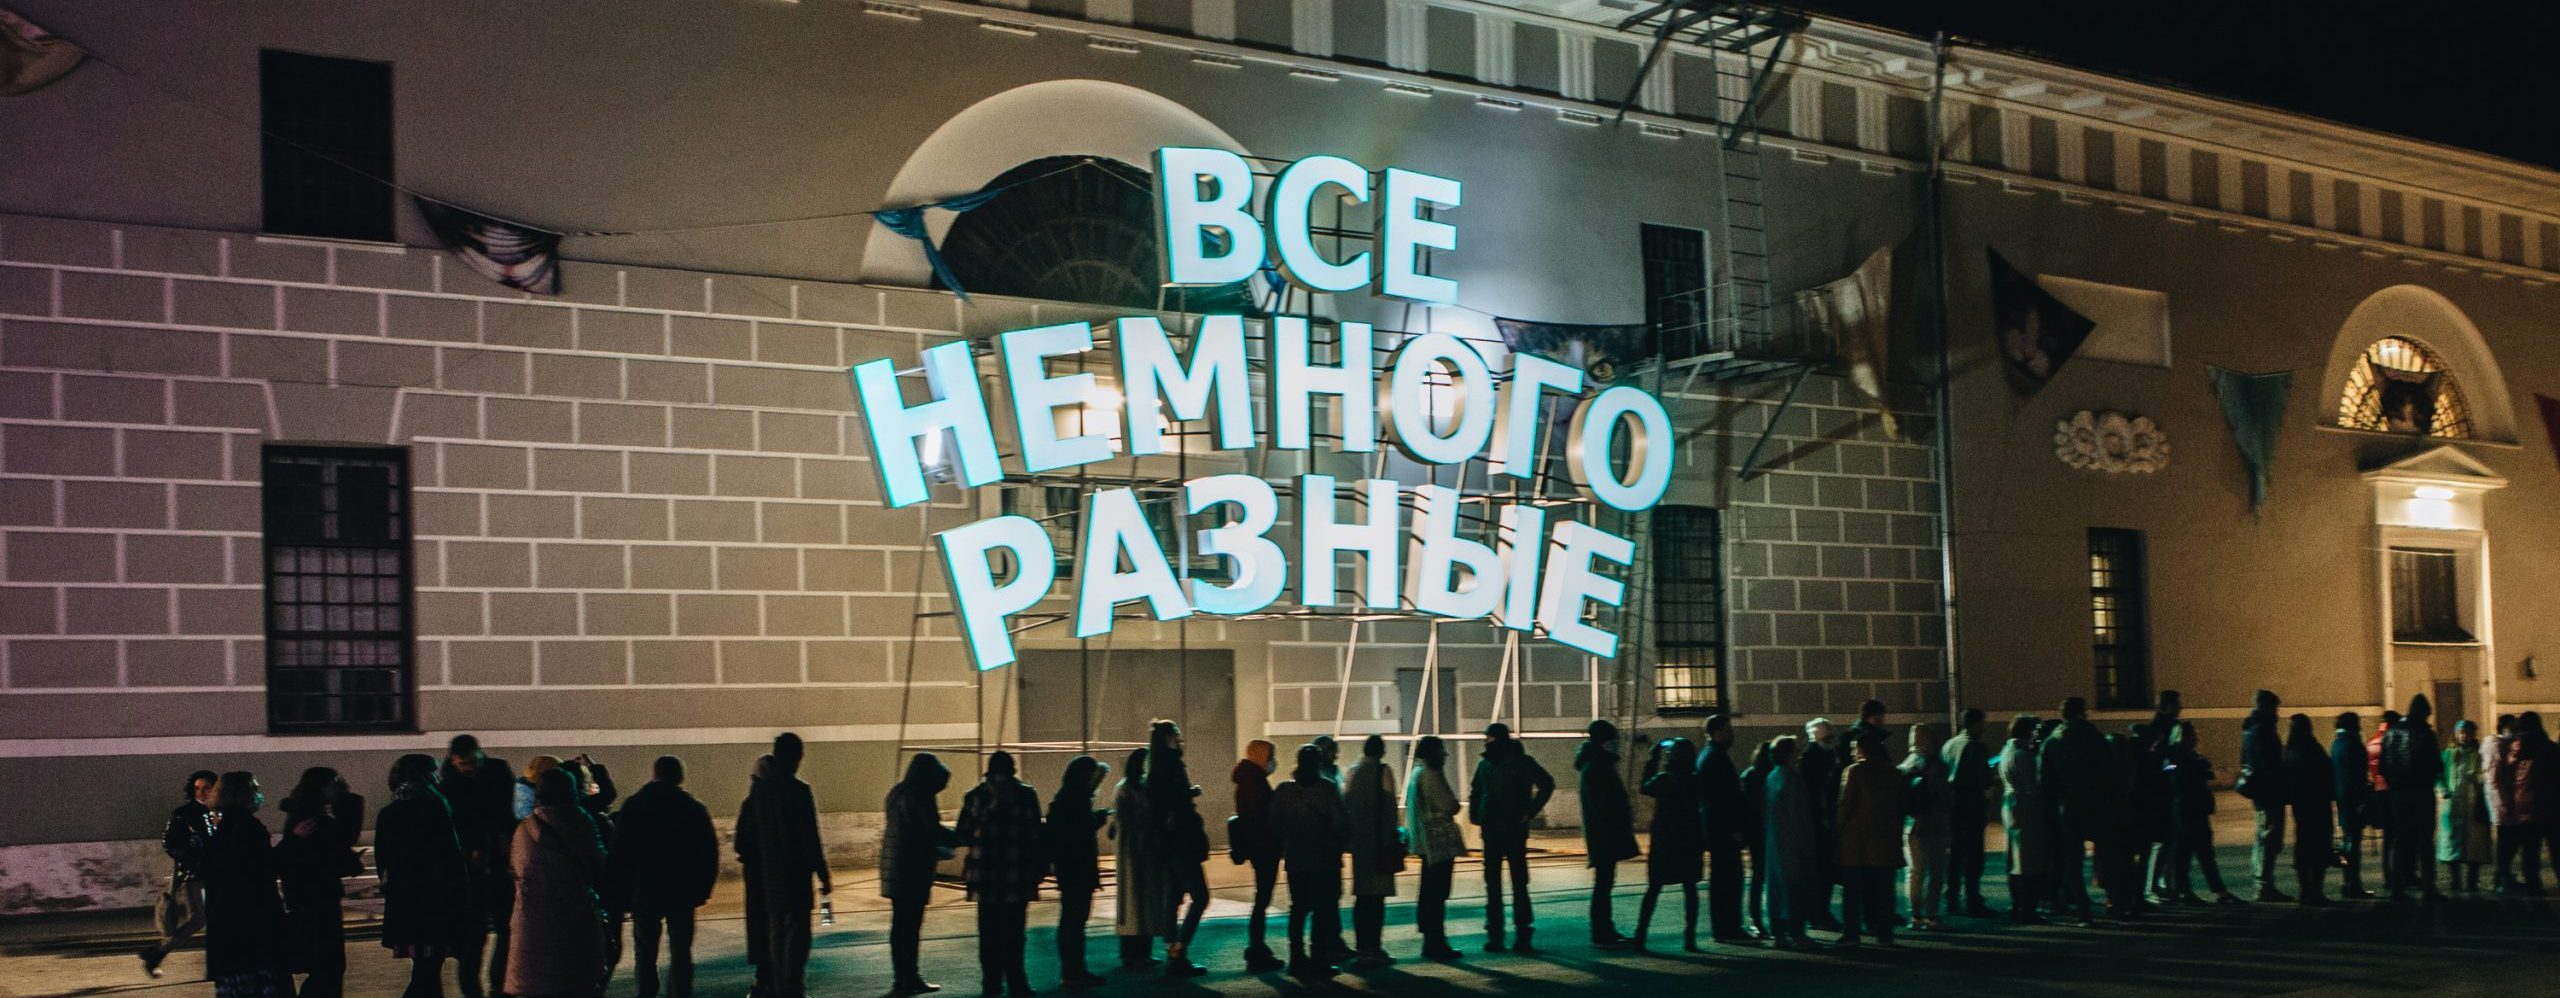 Программу мероприятий подготовили при поддержке Института развития интернета. Фото предоставили в пресс-службе Музея Москвы